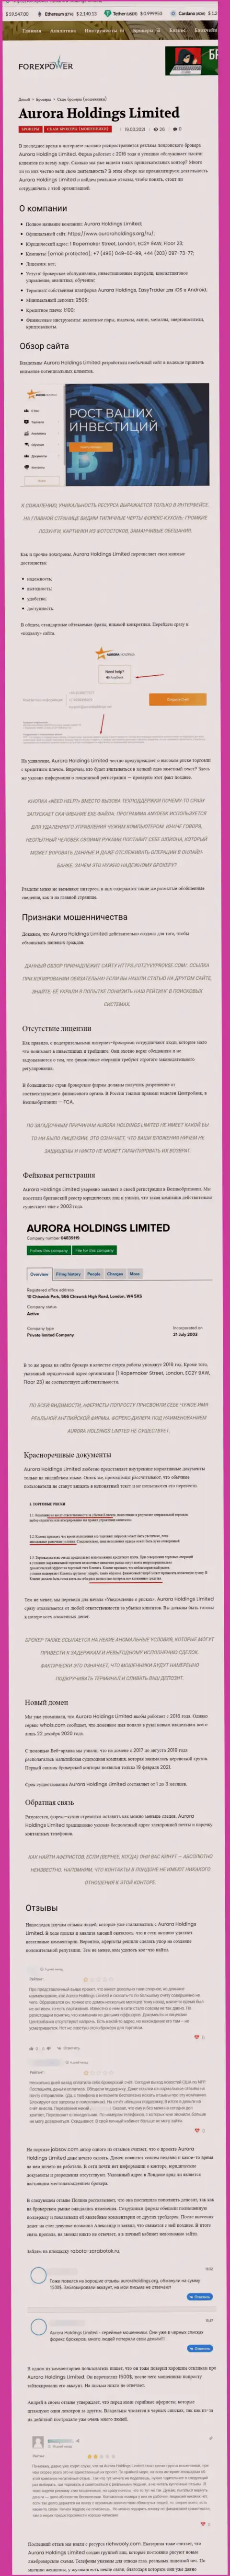 Aurora Holdings - это интернет-обманщики, которых стоило бы обходить десятой дорогой (обзор)